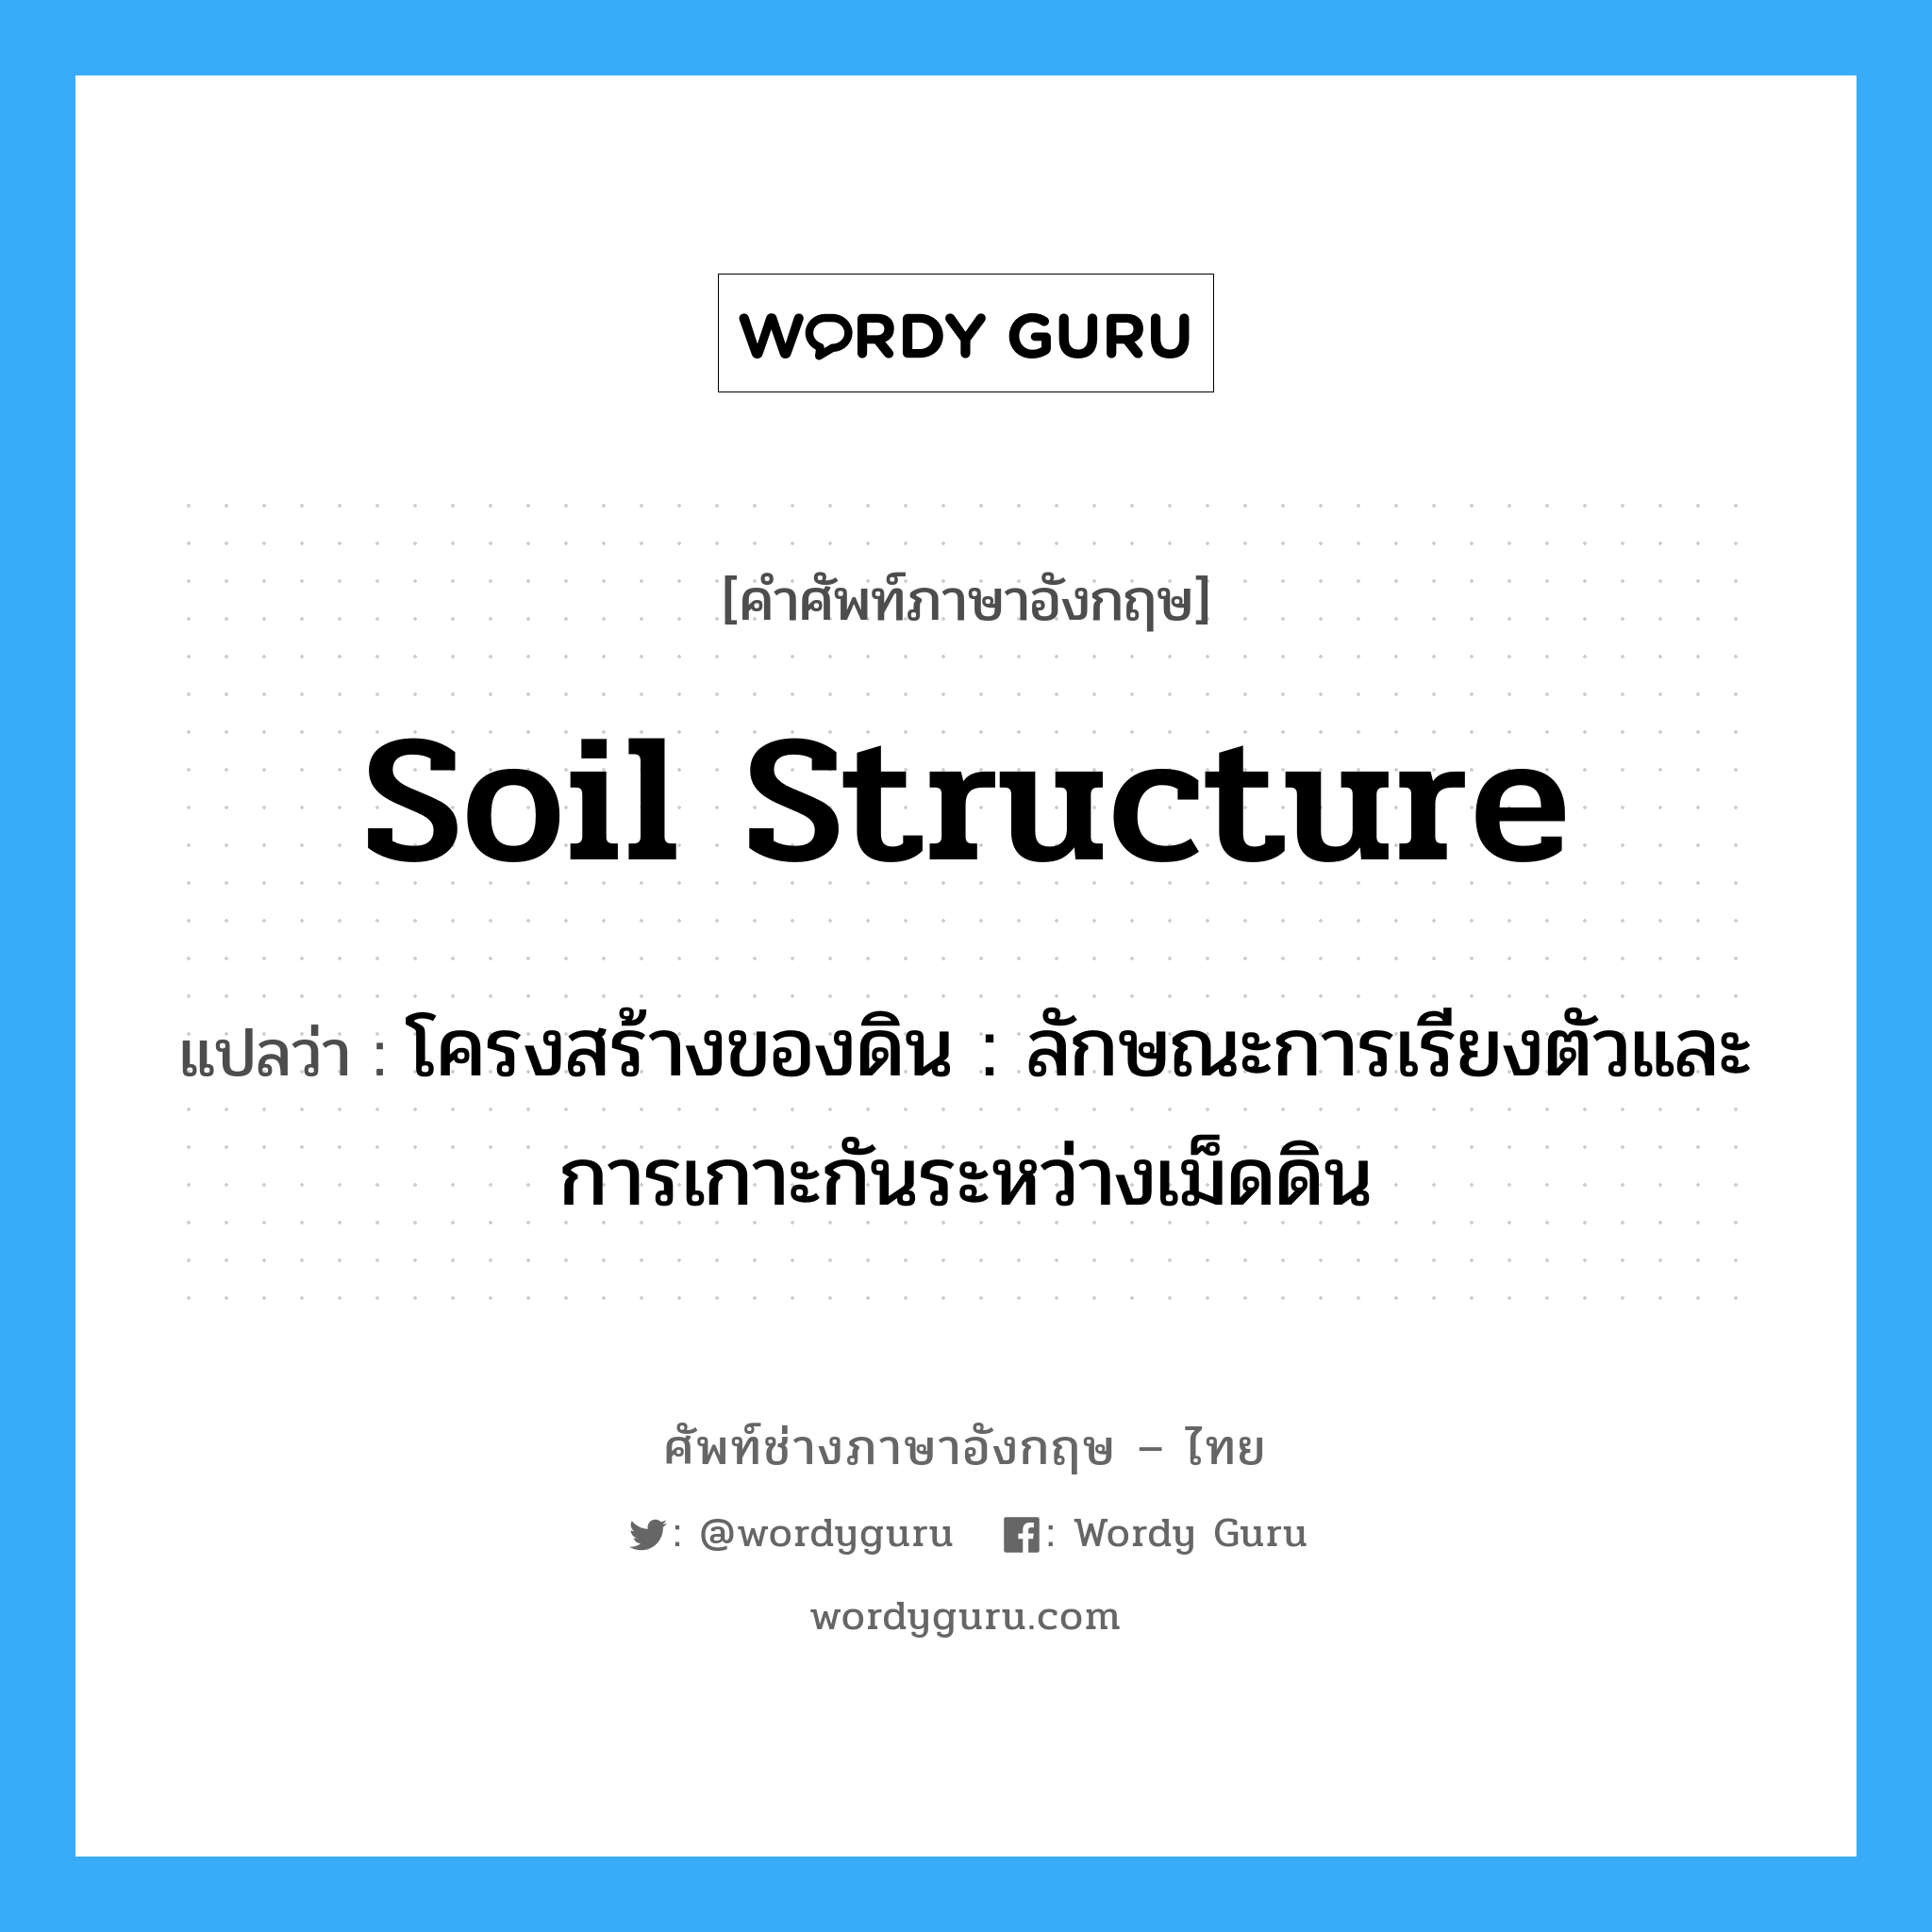 soil structure แปลว่า?, คำศัพท์ช่างภาษาอังกฤษ - ไทย soil structure คำศัพท์ภาษาอังกฤษ soil structure แปลว่า โครงสร้างของดิน : ลักษณะการเรียงตัวและการเกาะกันระหว่างเม็ดดิน